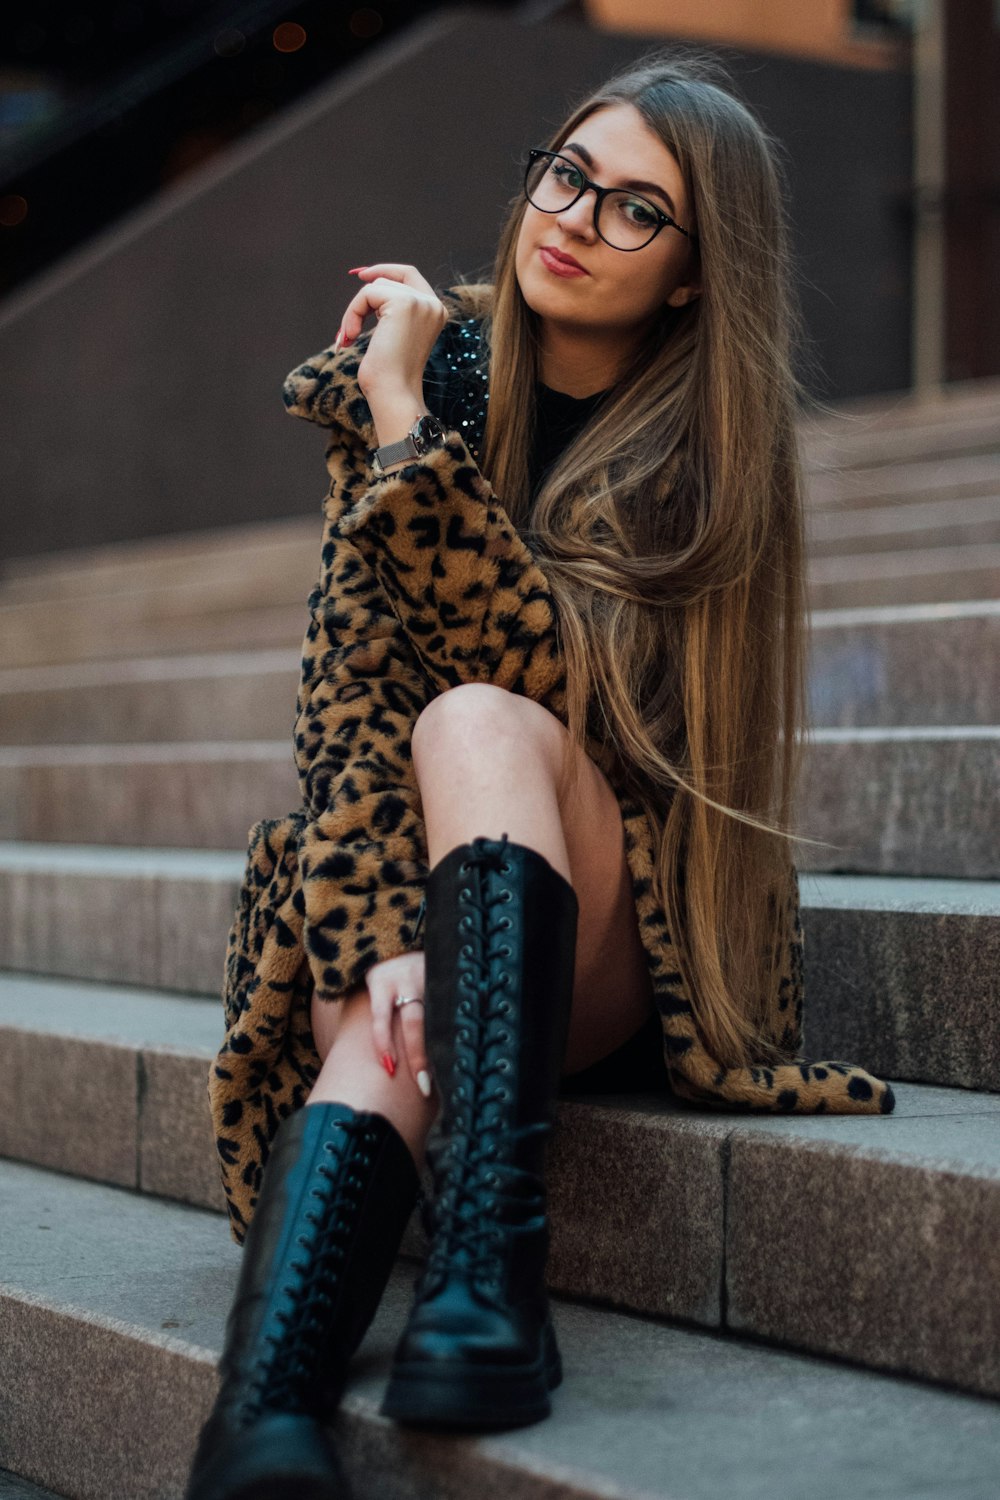 Femme en manteau à imprimé léopard et bottes noires assise sur des escaliers en béton